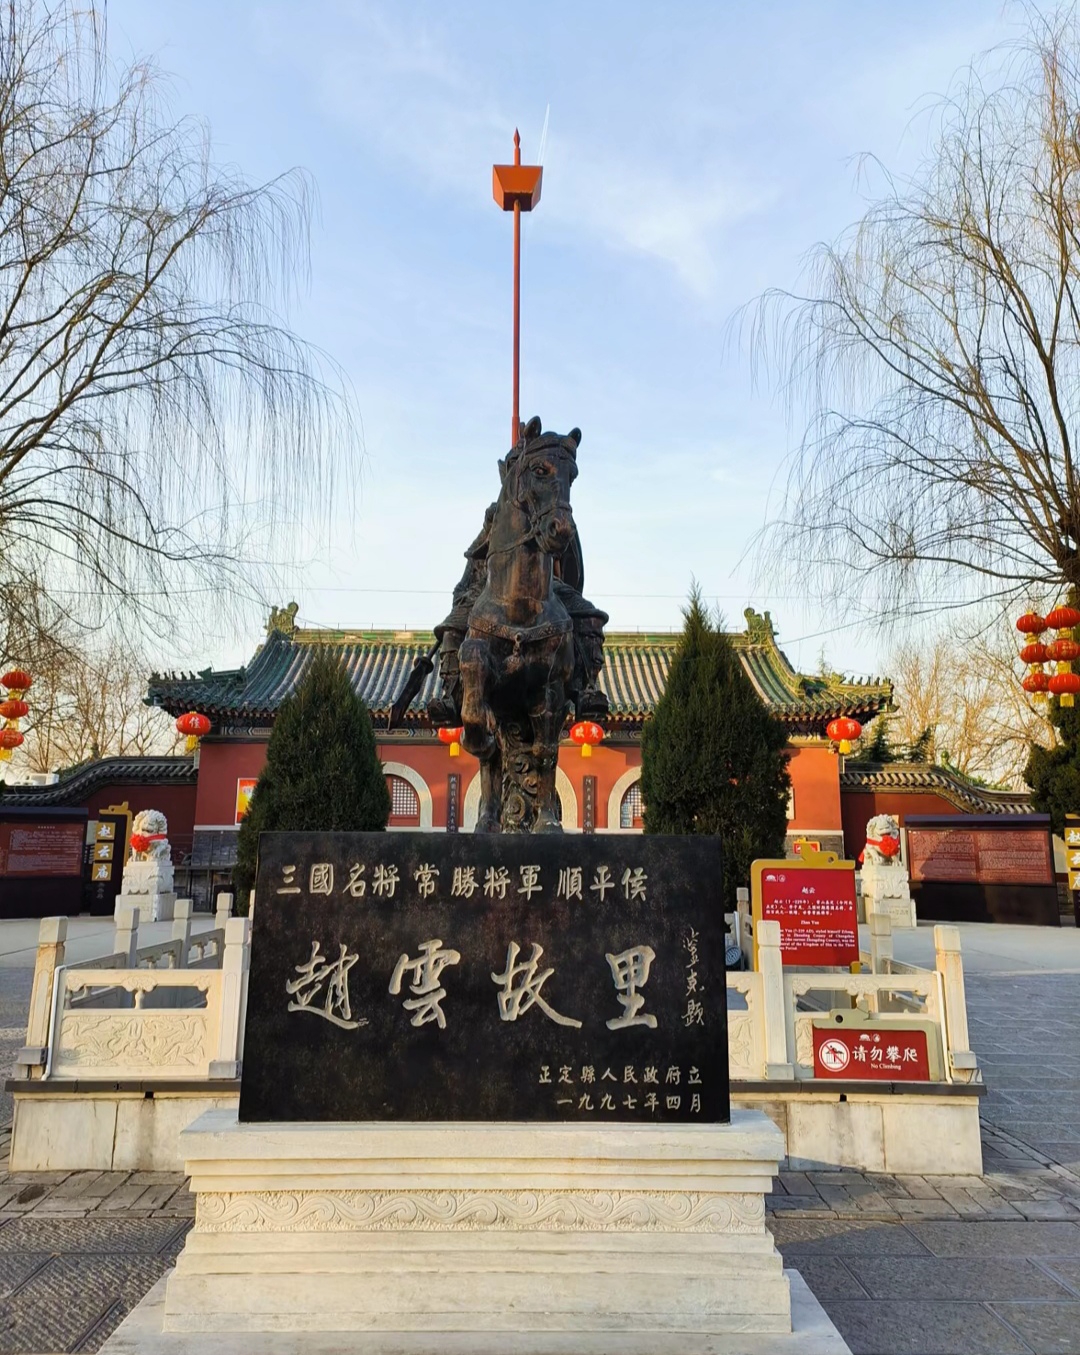 赵云庙位于河北省正定县县城内，是国家AA级旅游景区和正定县文物保护单位。该庙于1997年正式对外开放